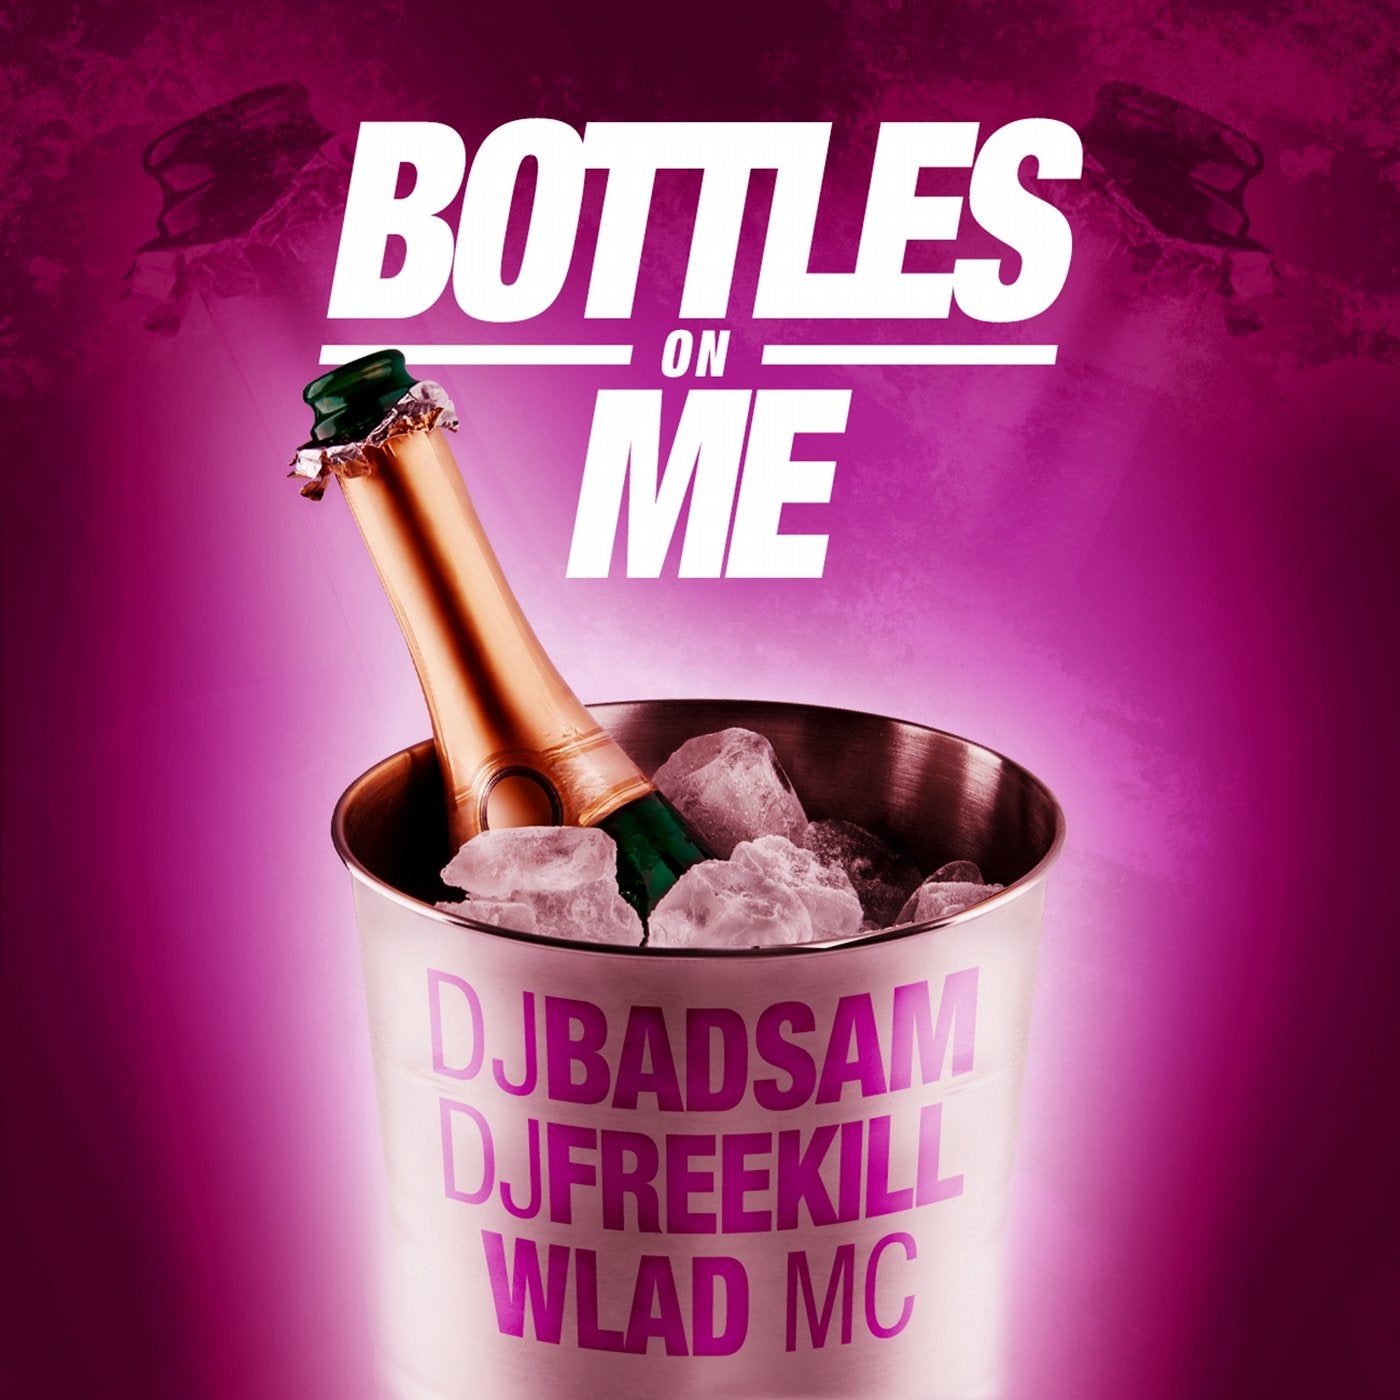 Bottles on Me (feat. DJ Badsam, DJ Freekill) [Radio Edit]